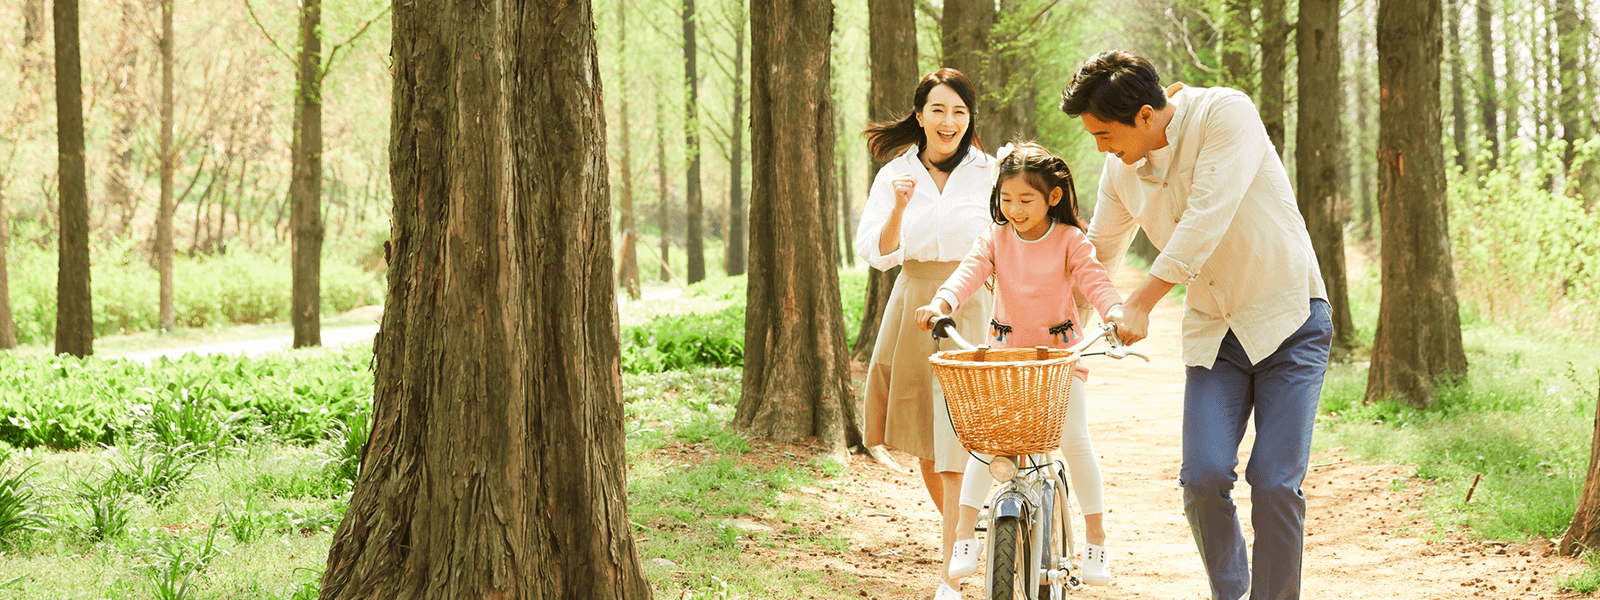 自転車をこぐ女の子とそれを支える父親と笑顔で追いかける母親の画像